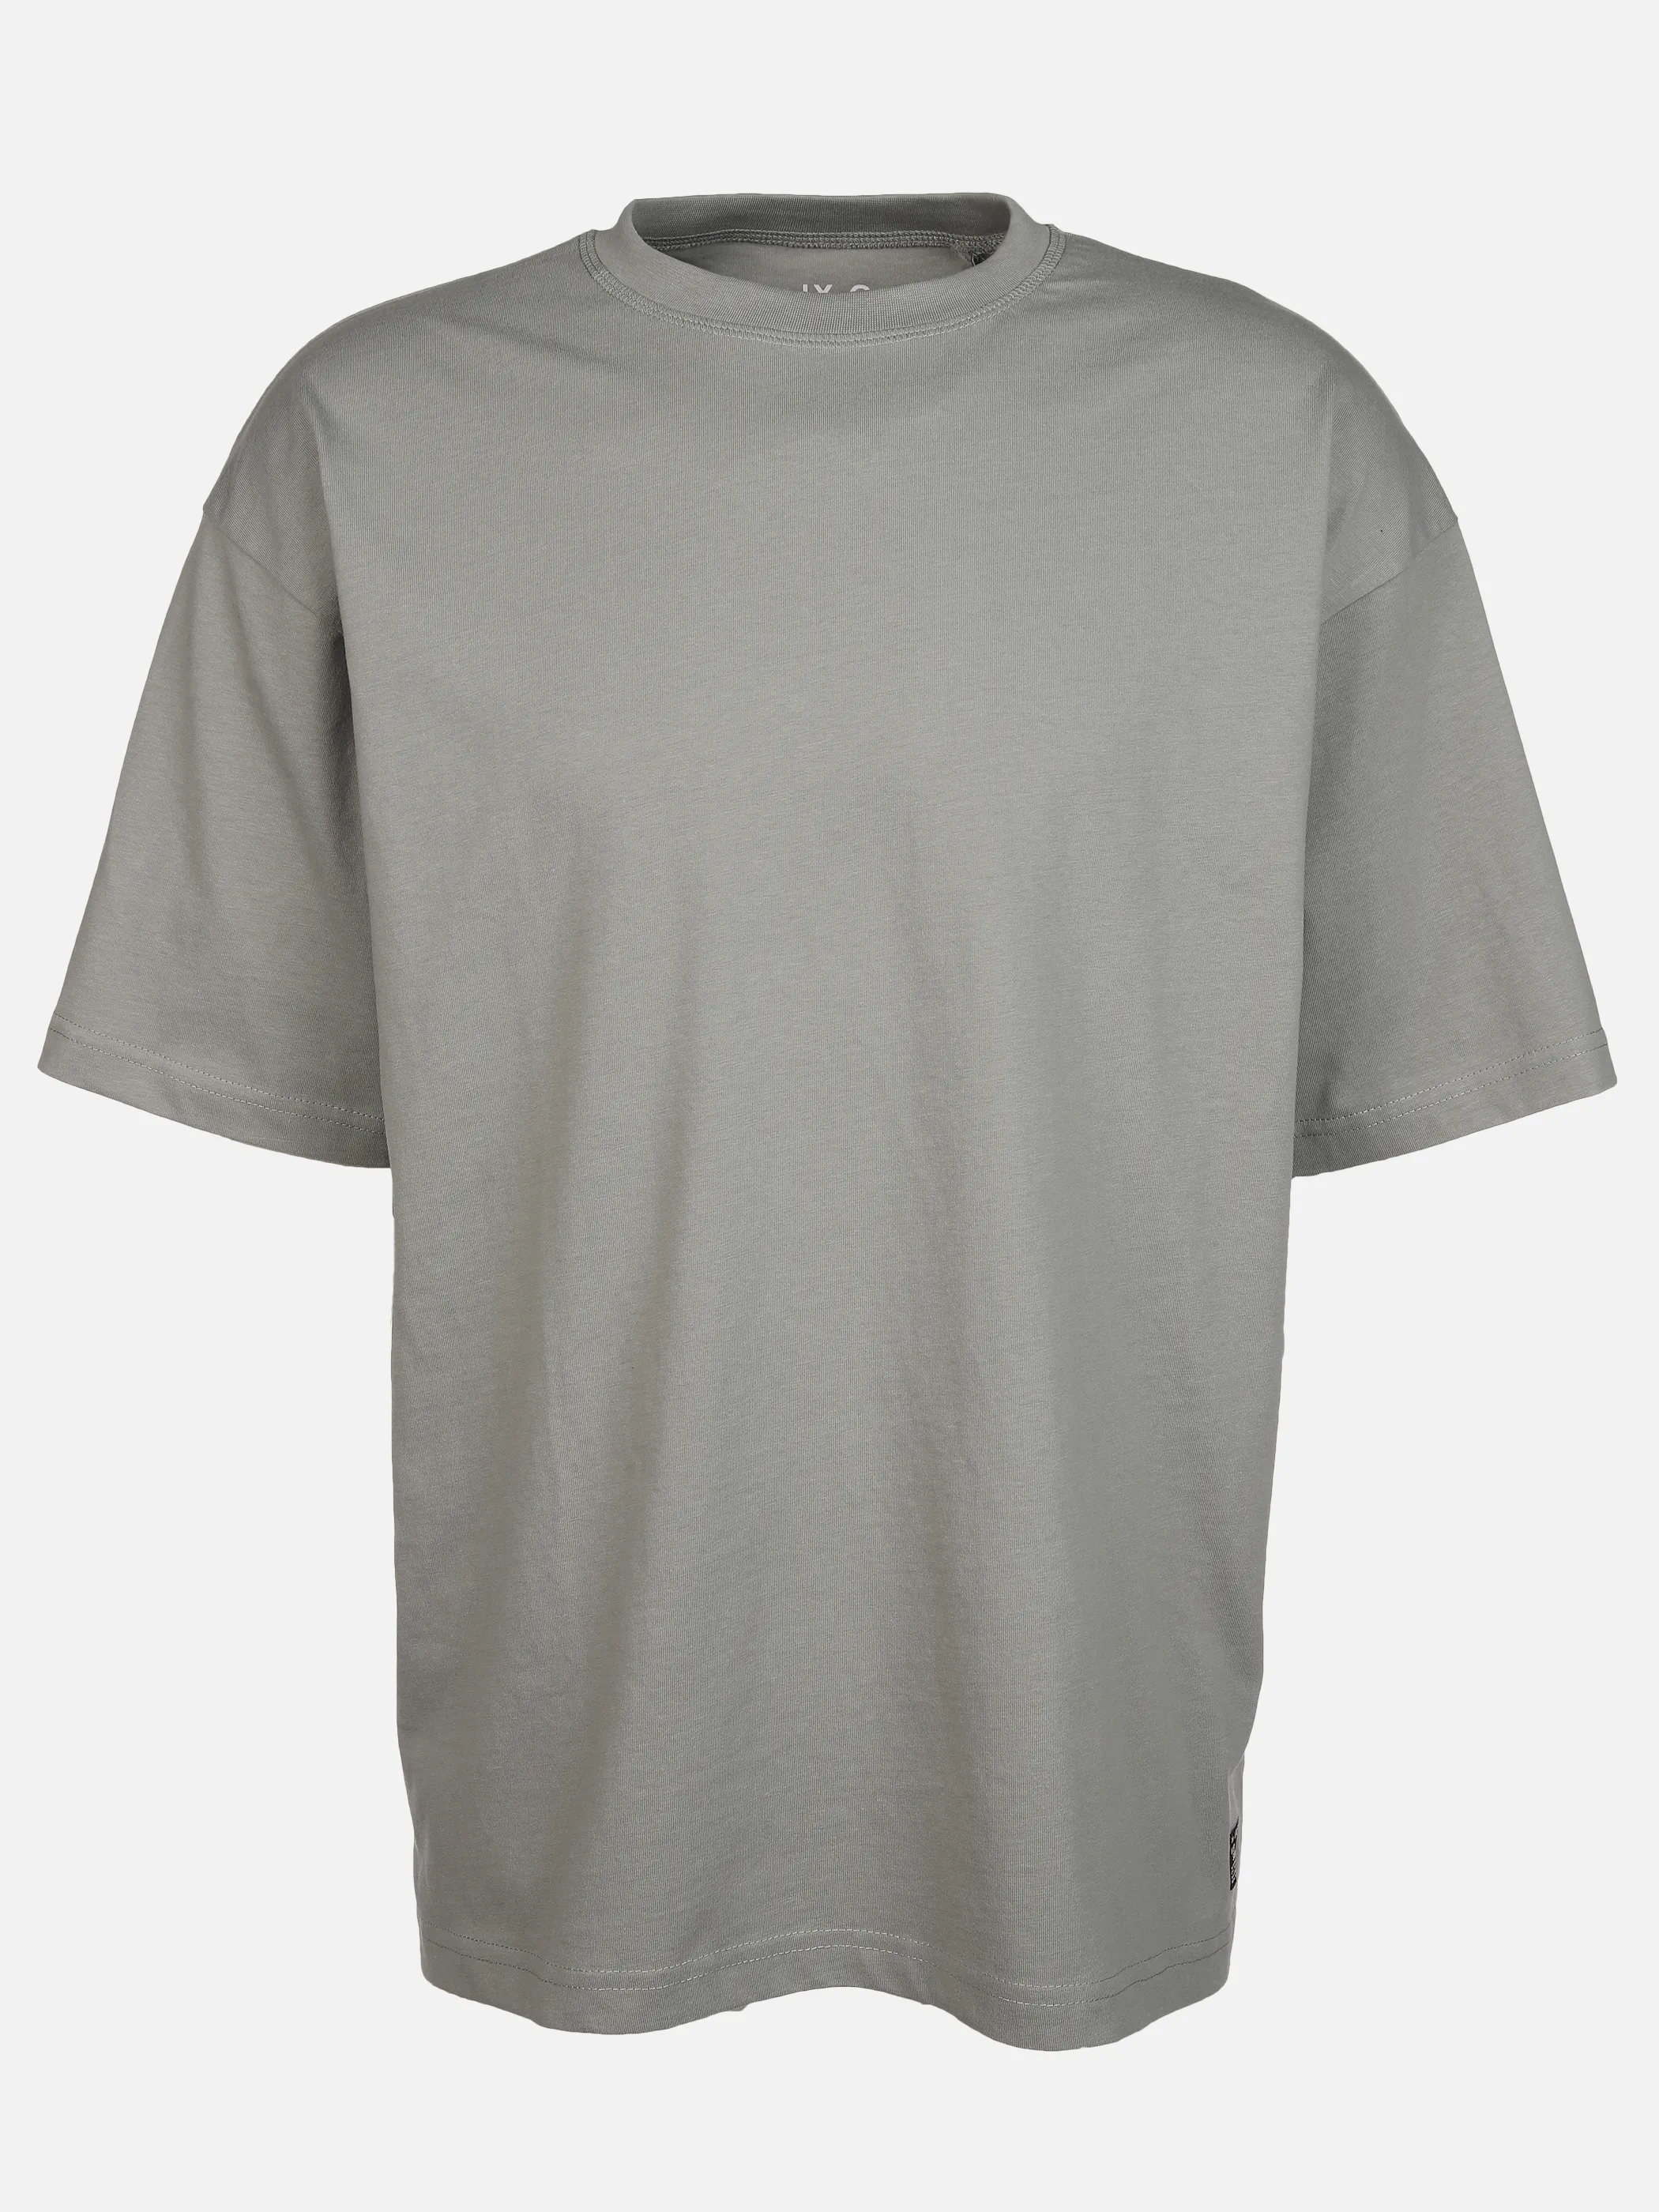 IX-O YF-He- T-Shirt Oversized Grau 891813 SALBEI 1